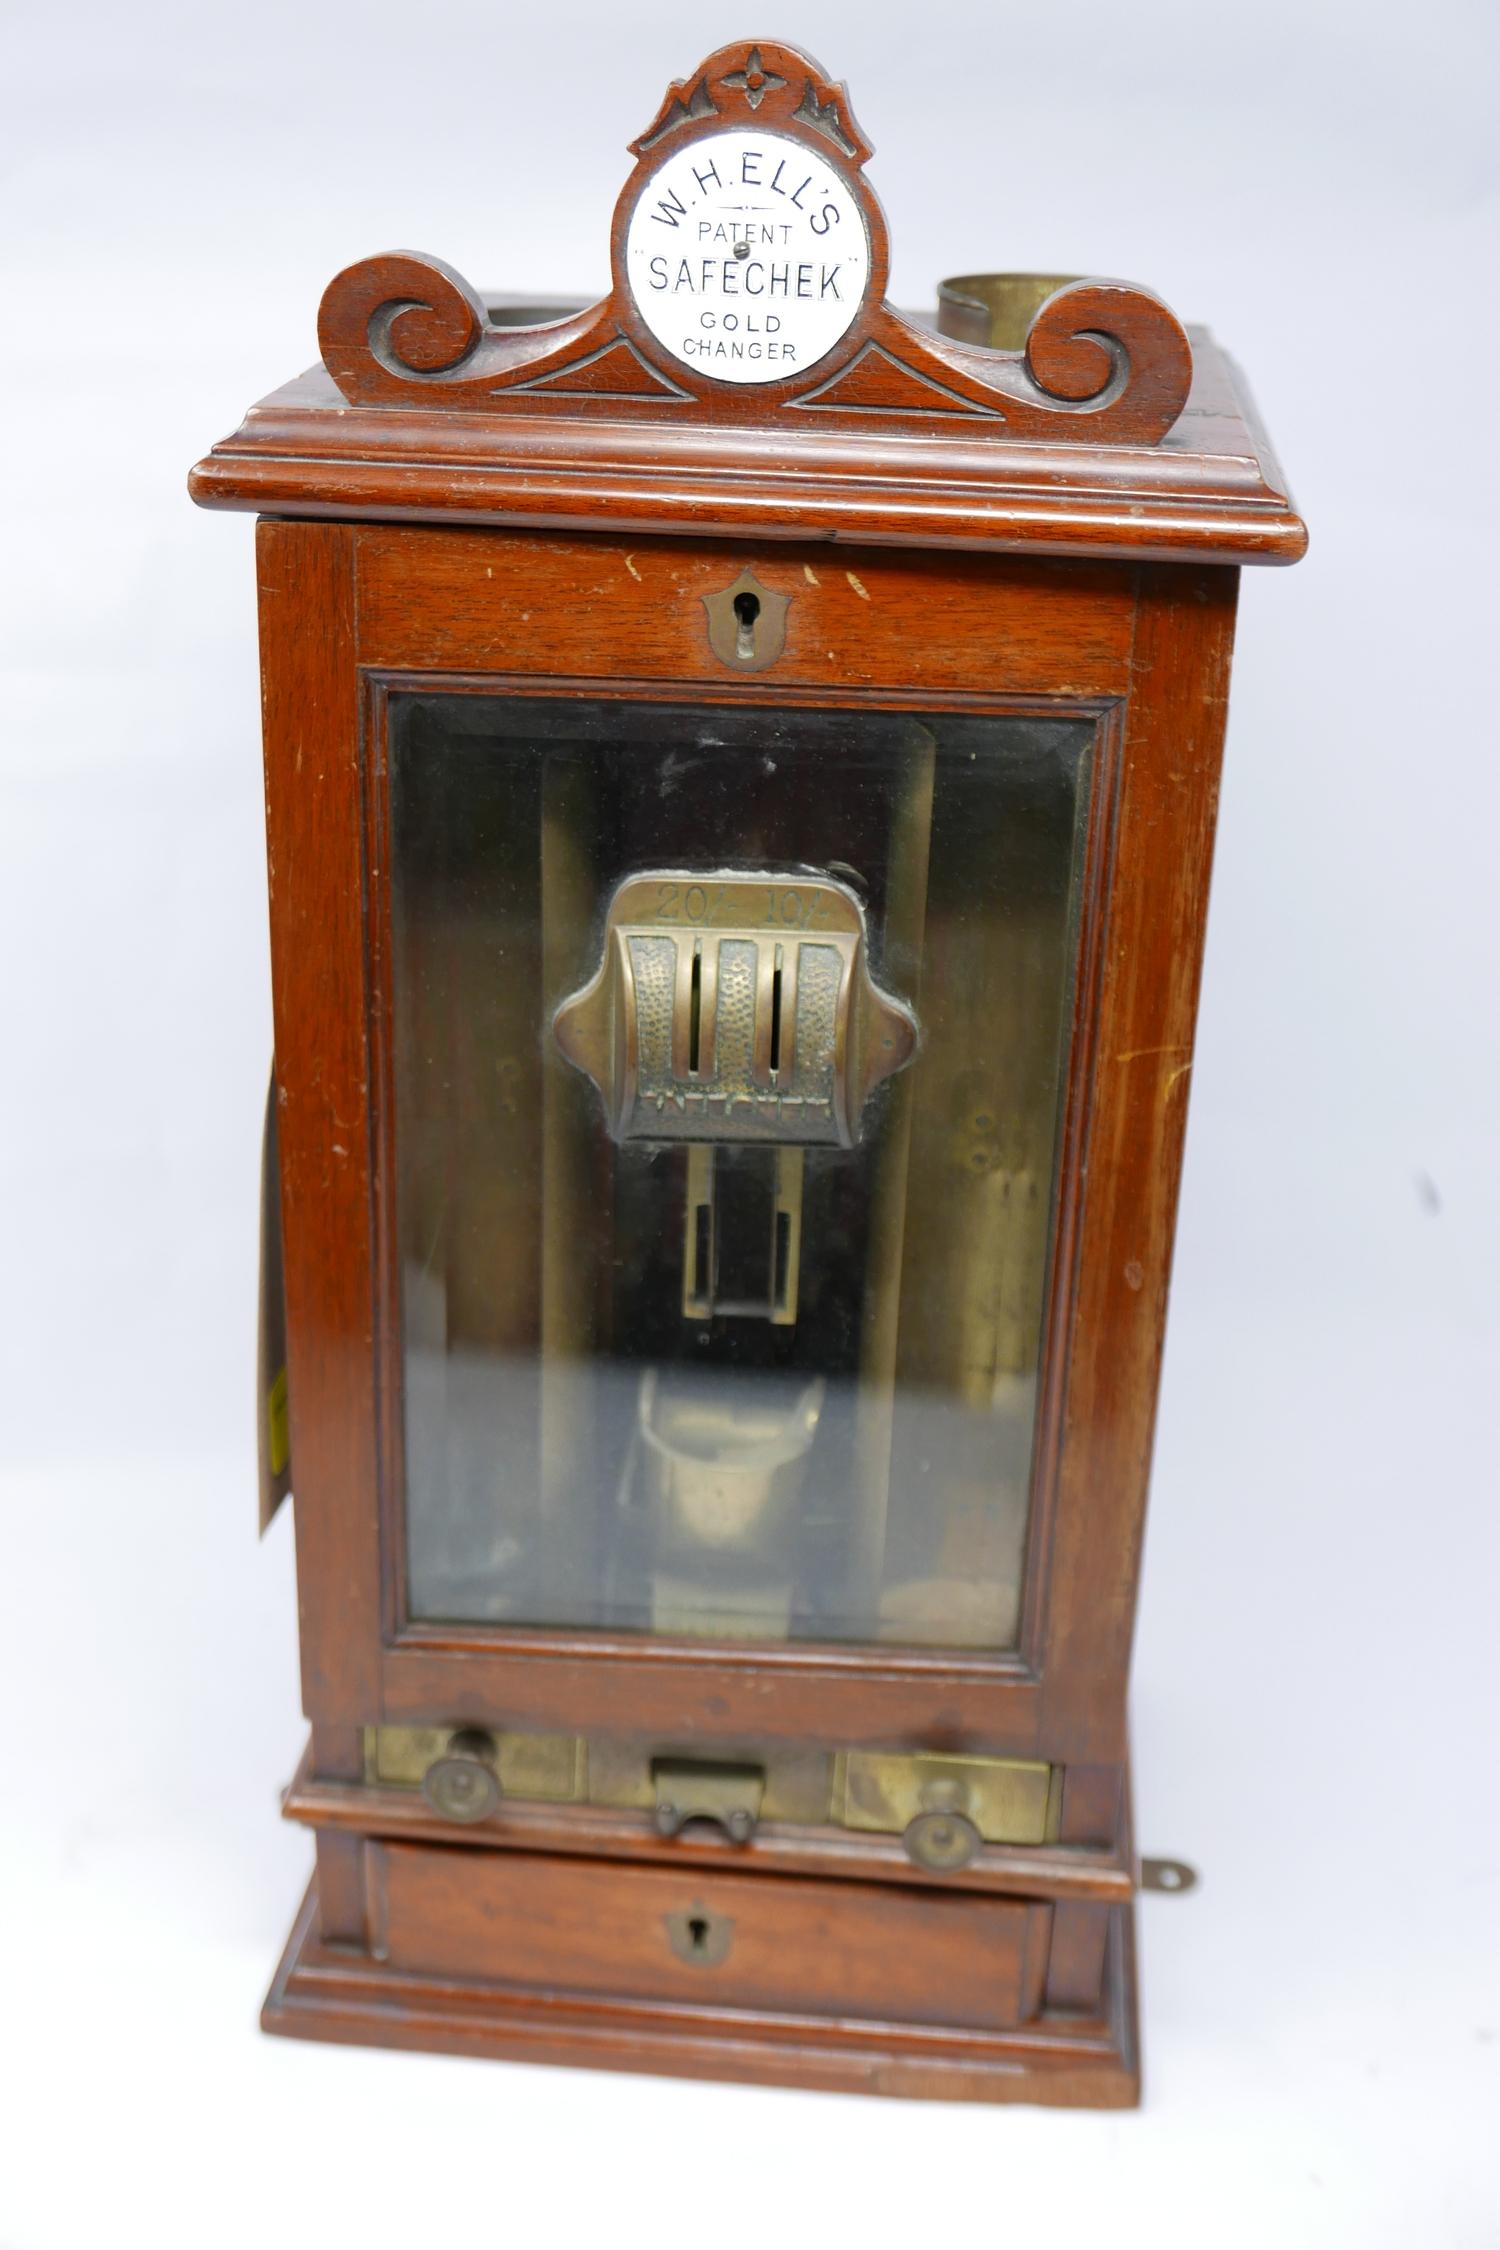 W.H.Ell's Safechek Gold Changer machine, H.47cm